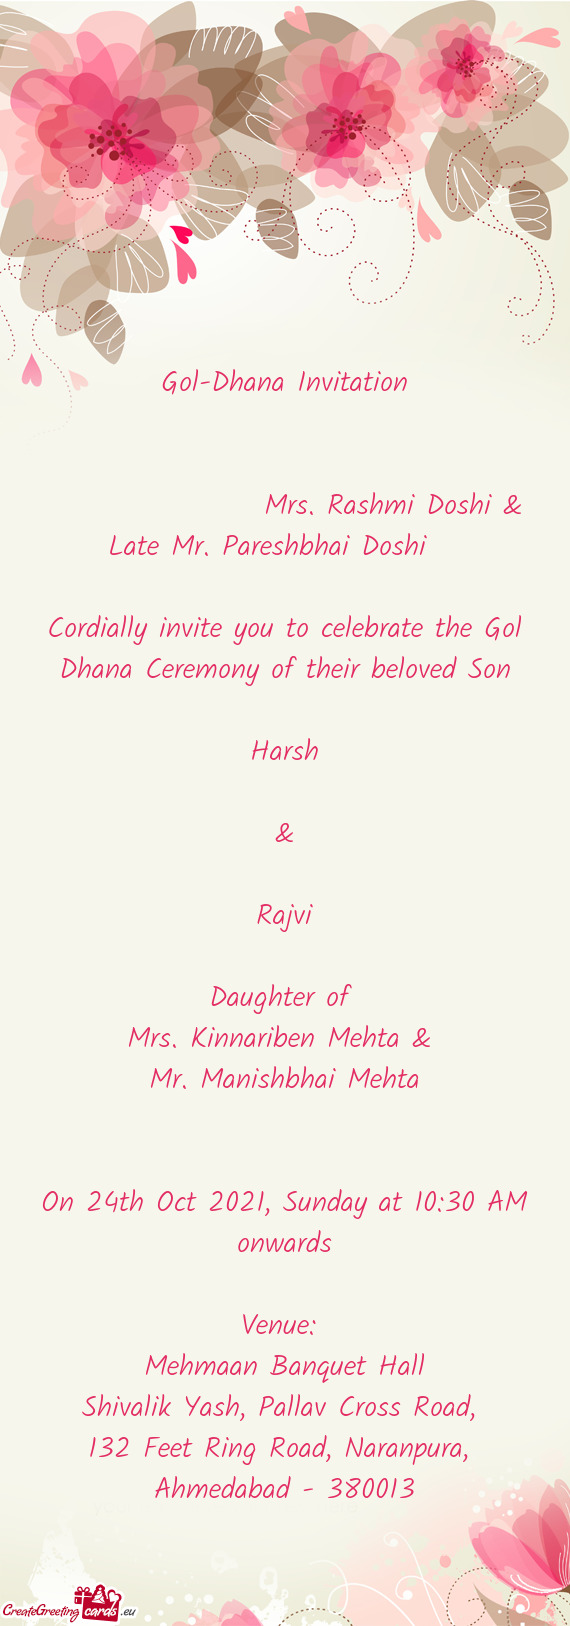 Mrs. Rashmi Doshi & Late Mr. Pareshbhai Doshi